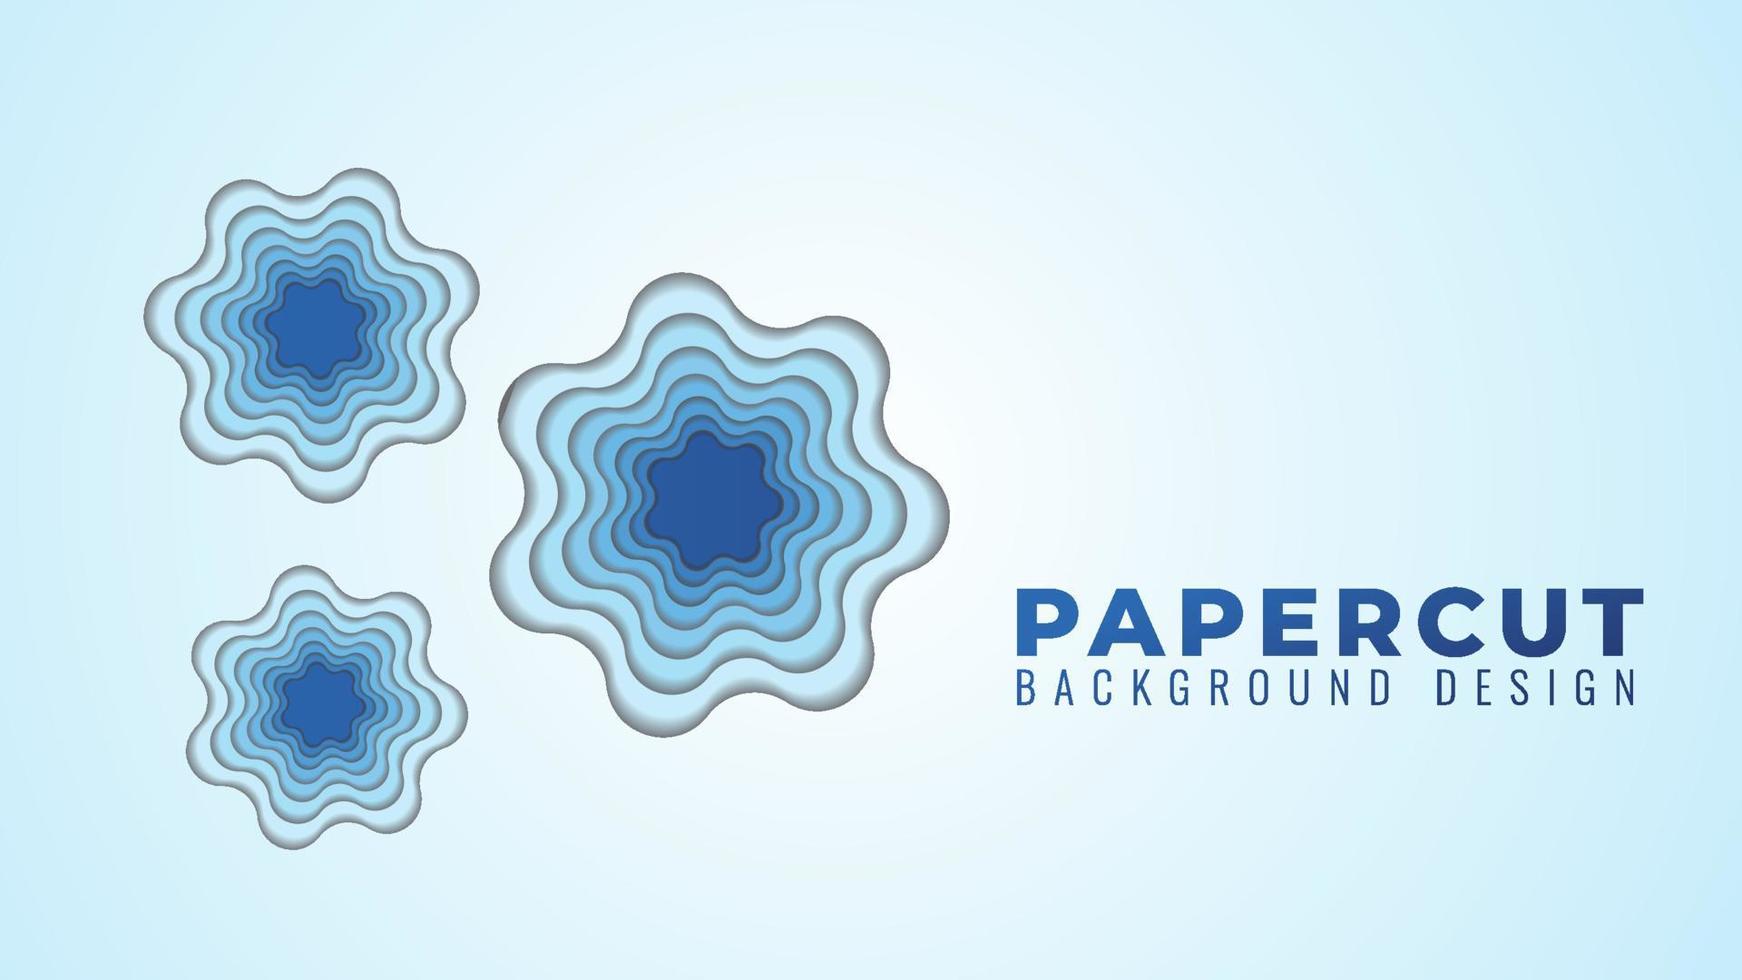 illustrazione vettoriale di strati di papercut con foro ondulato. modello di progettazione di sfondo astratto. tema di colore sfumato blu.